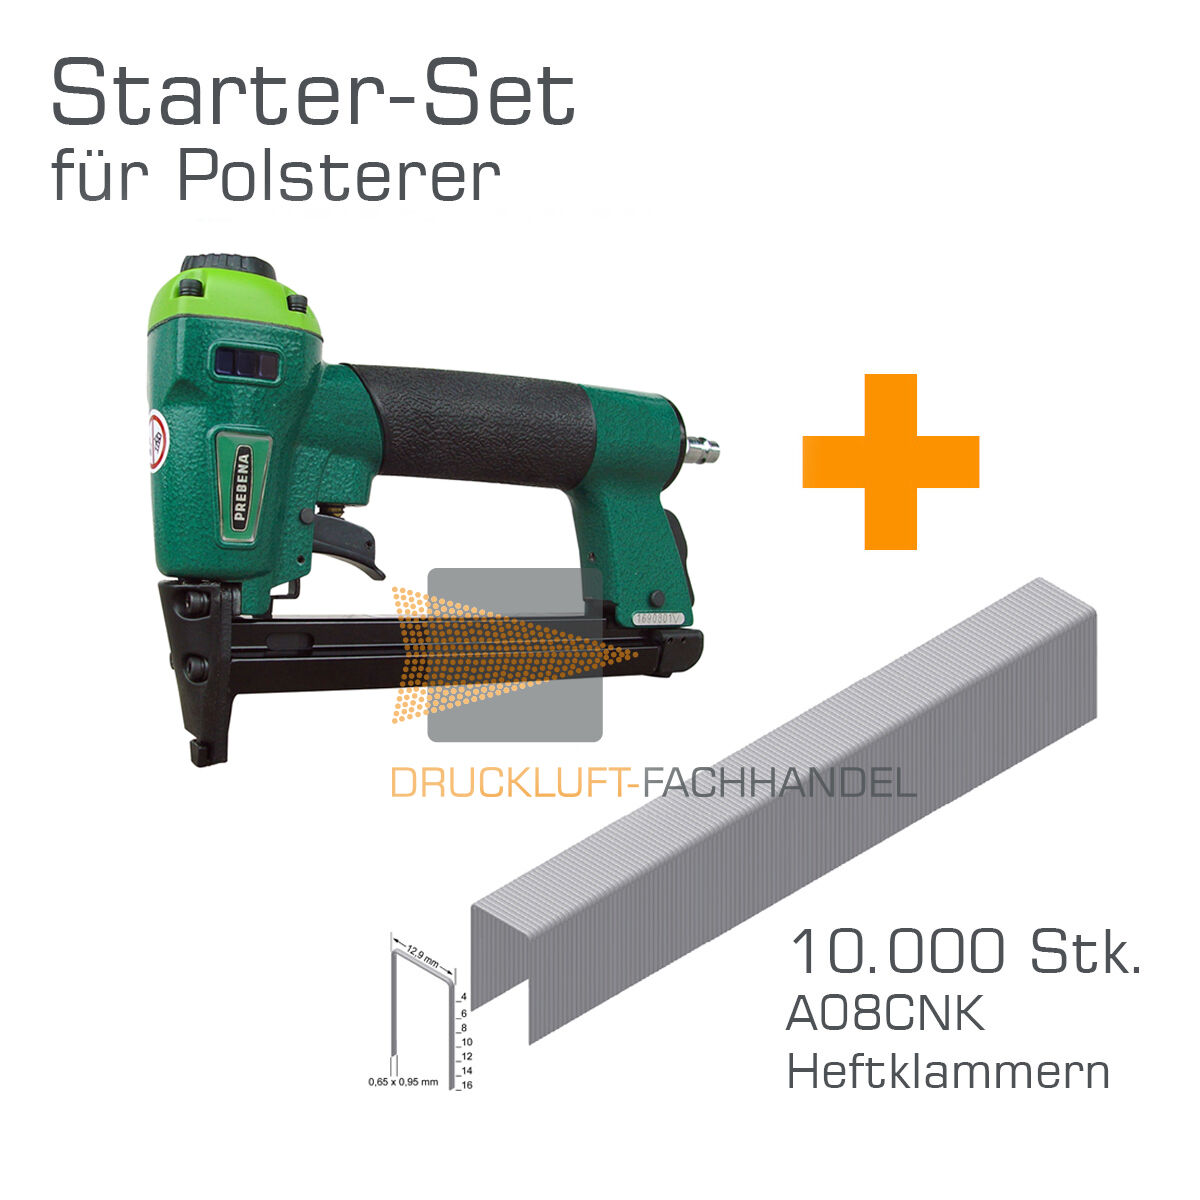 Prebena Druckluftnagler 1XR-A16 + 10.000 A08CNK Heftklammern - Starter-Set für Polsterer